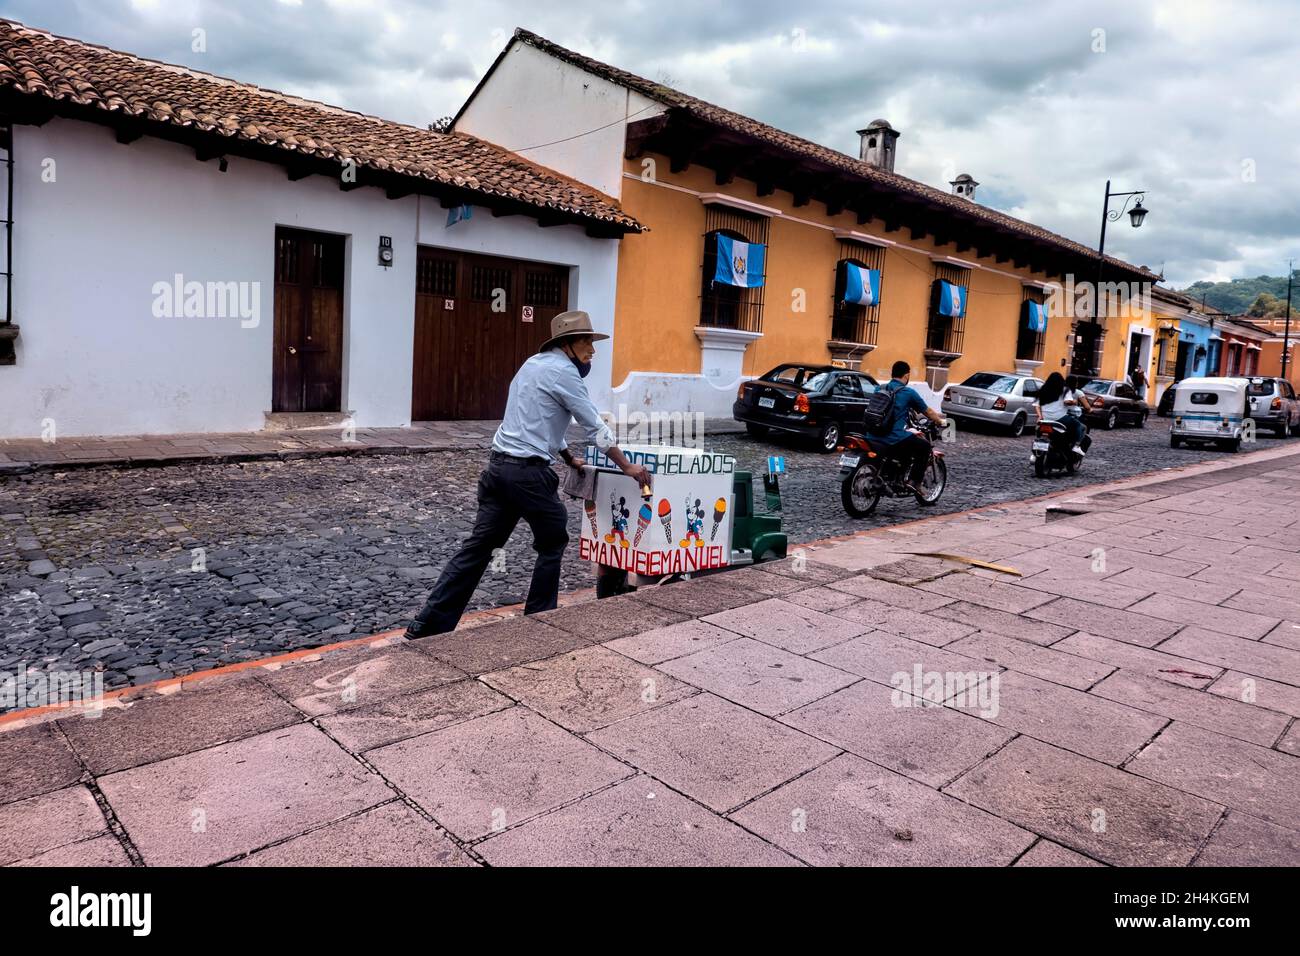 Vendedor de helados en la histórica Antigua, Guatemala. Foto de stock